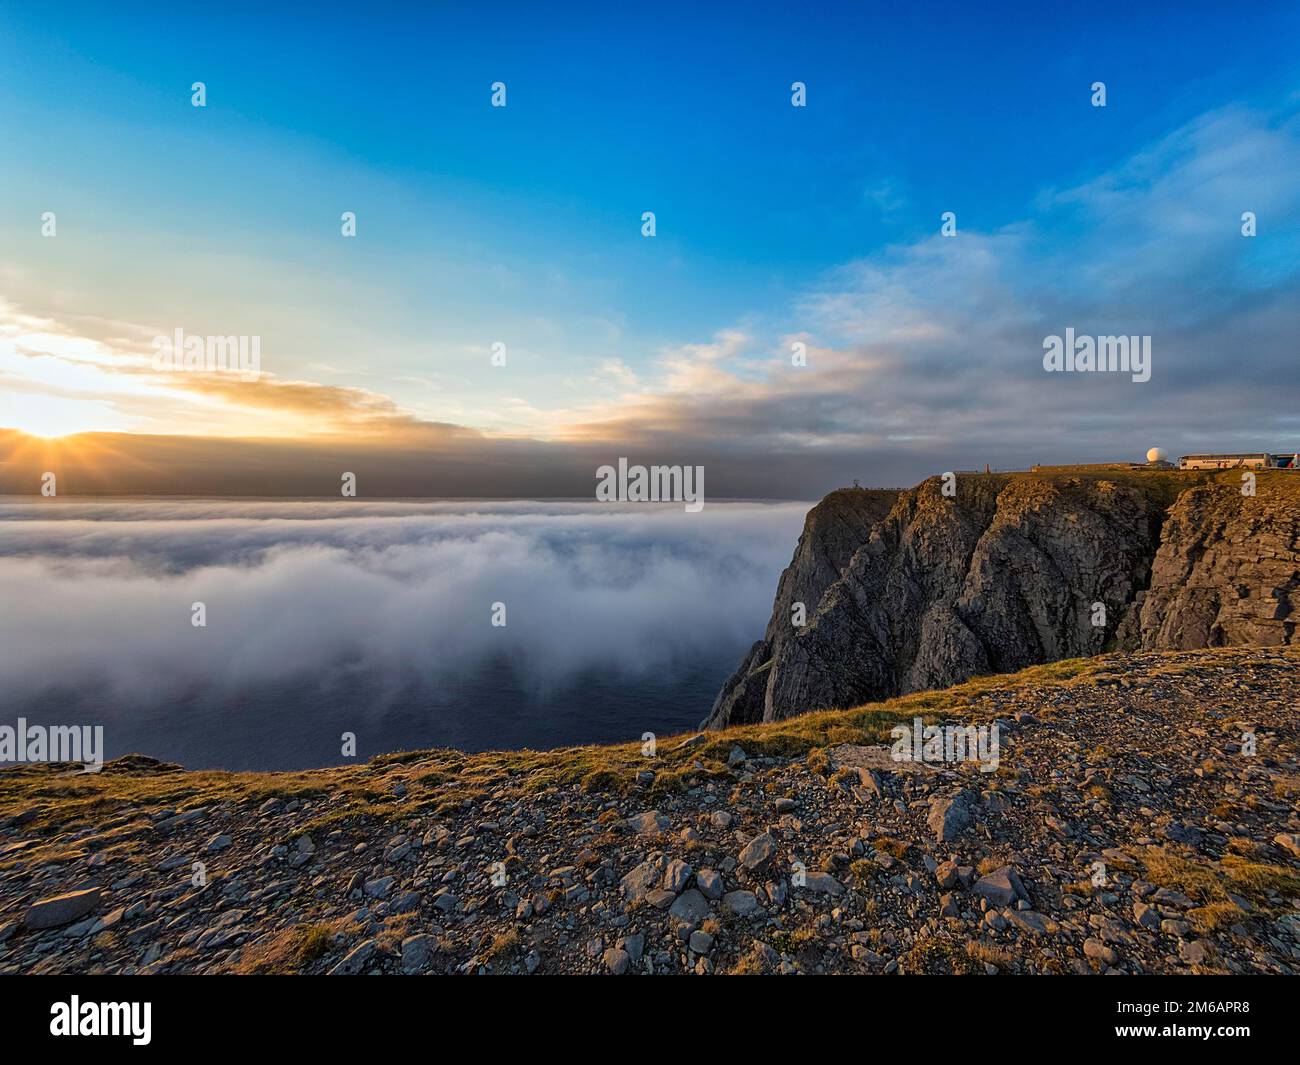 Costa de esquisto rocoso, mar de nubes con sol de medianoche, plataforma de visitantes en el horizonte, Cabo Norte, Nordkapp, Mageroya, Finnmark, Océano Ártico, Noruega Foto de stock